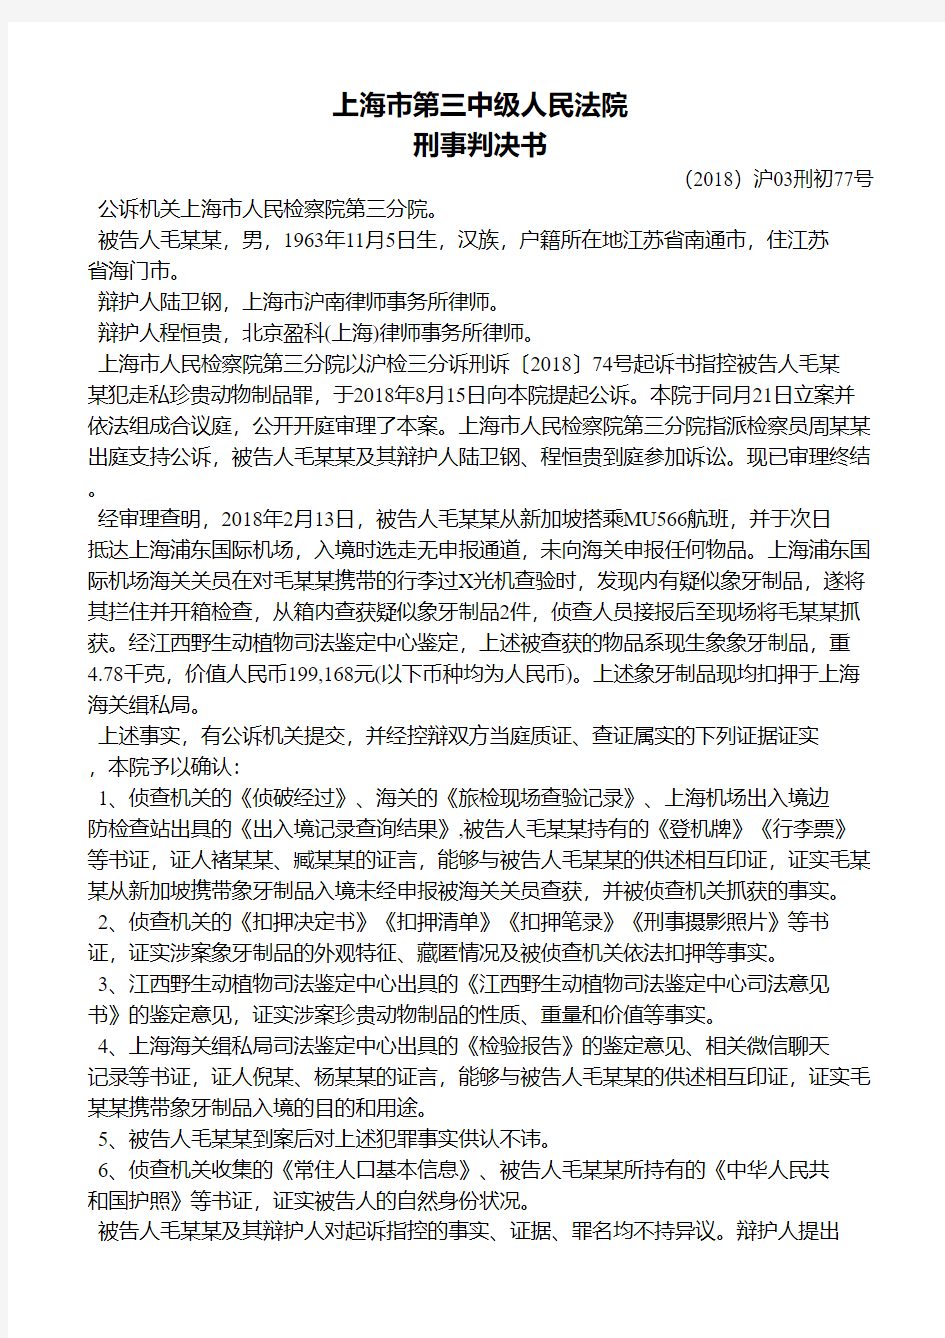 上海市第三中级人民法院刑事判决书